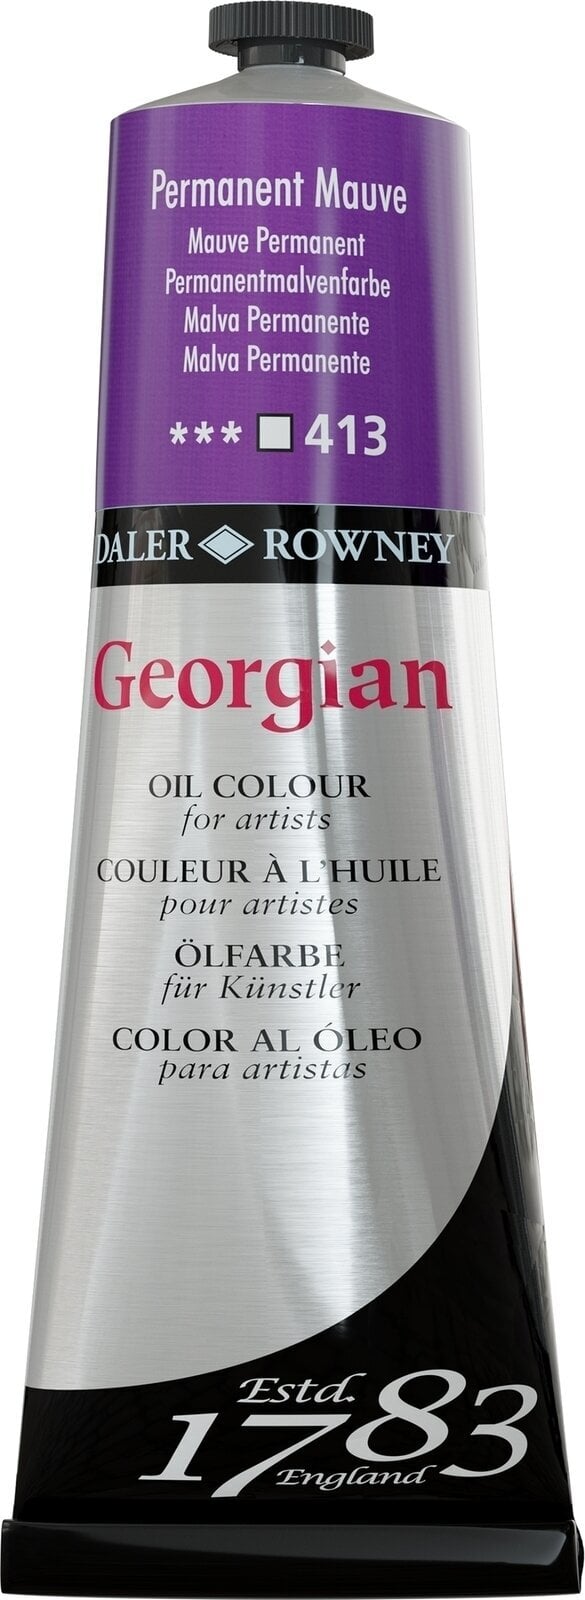 Aceite de colores Daler Rowney Georgian Oil Paint Permanent Mauve 225 ml 1 pc